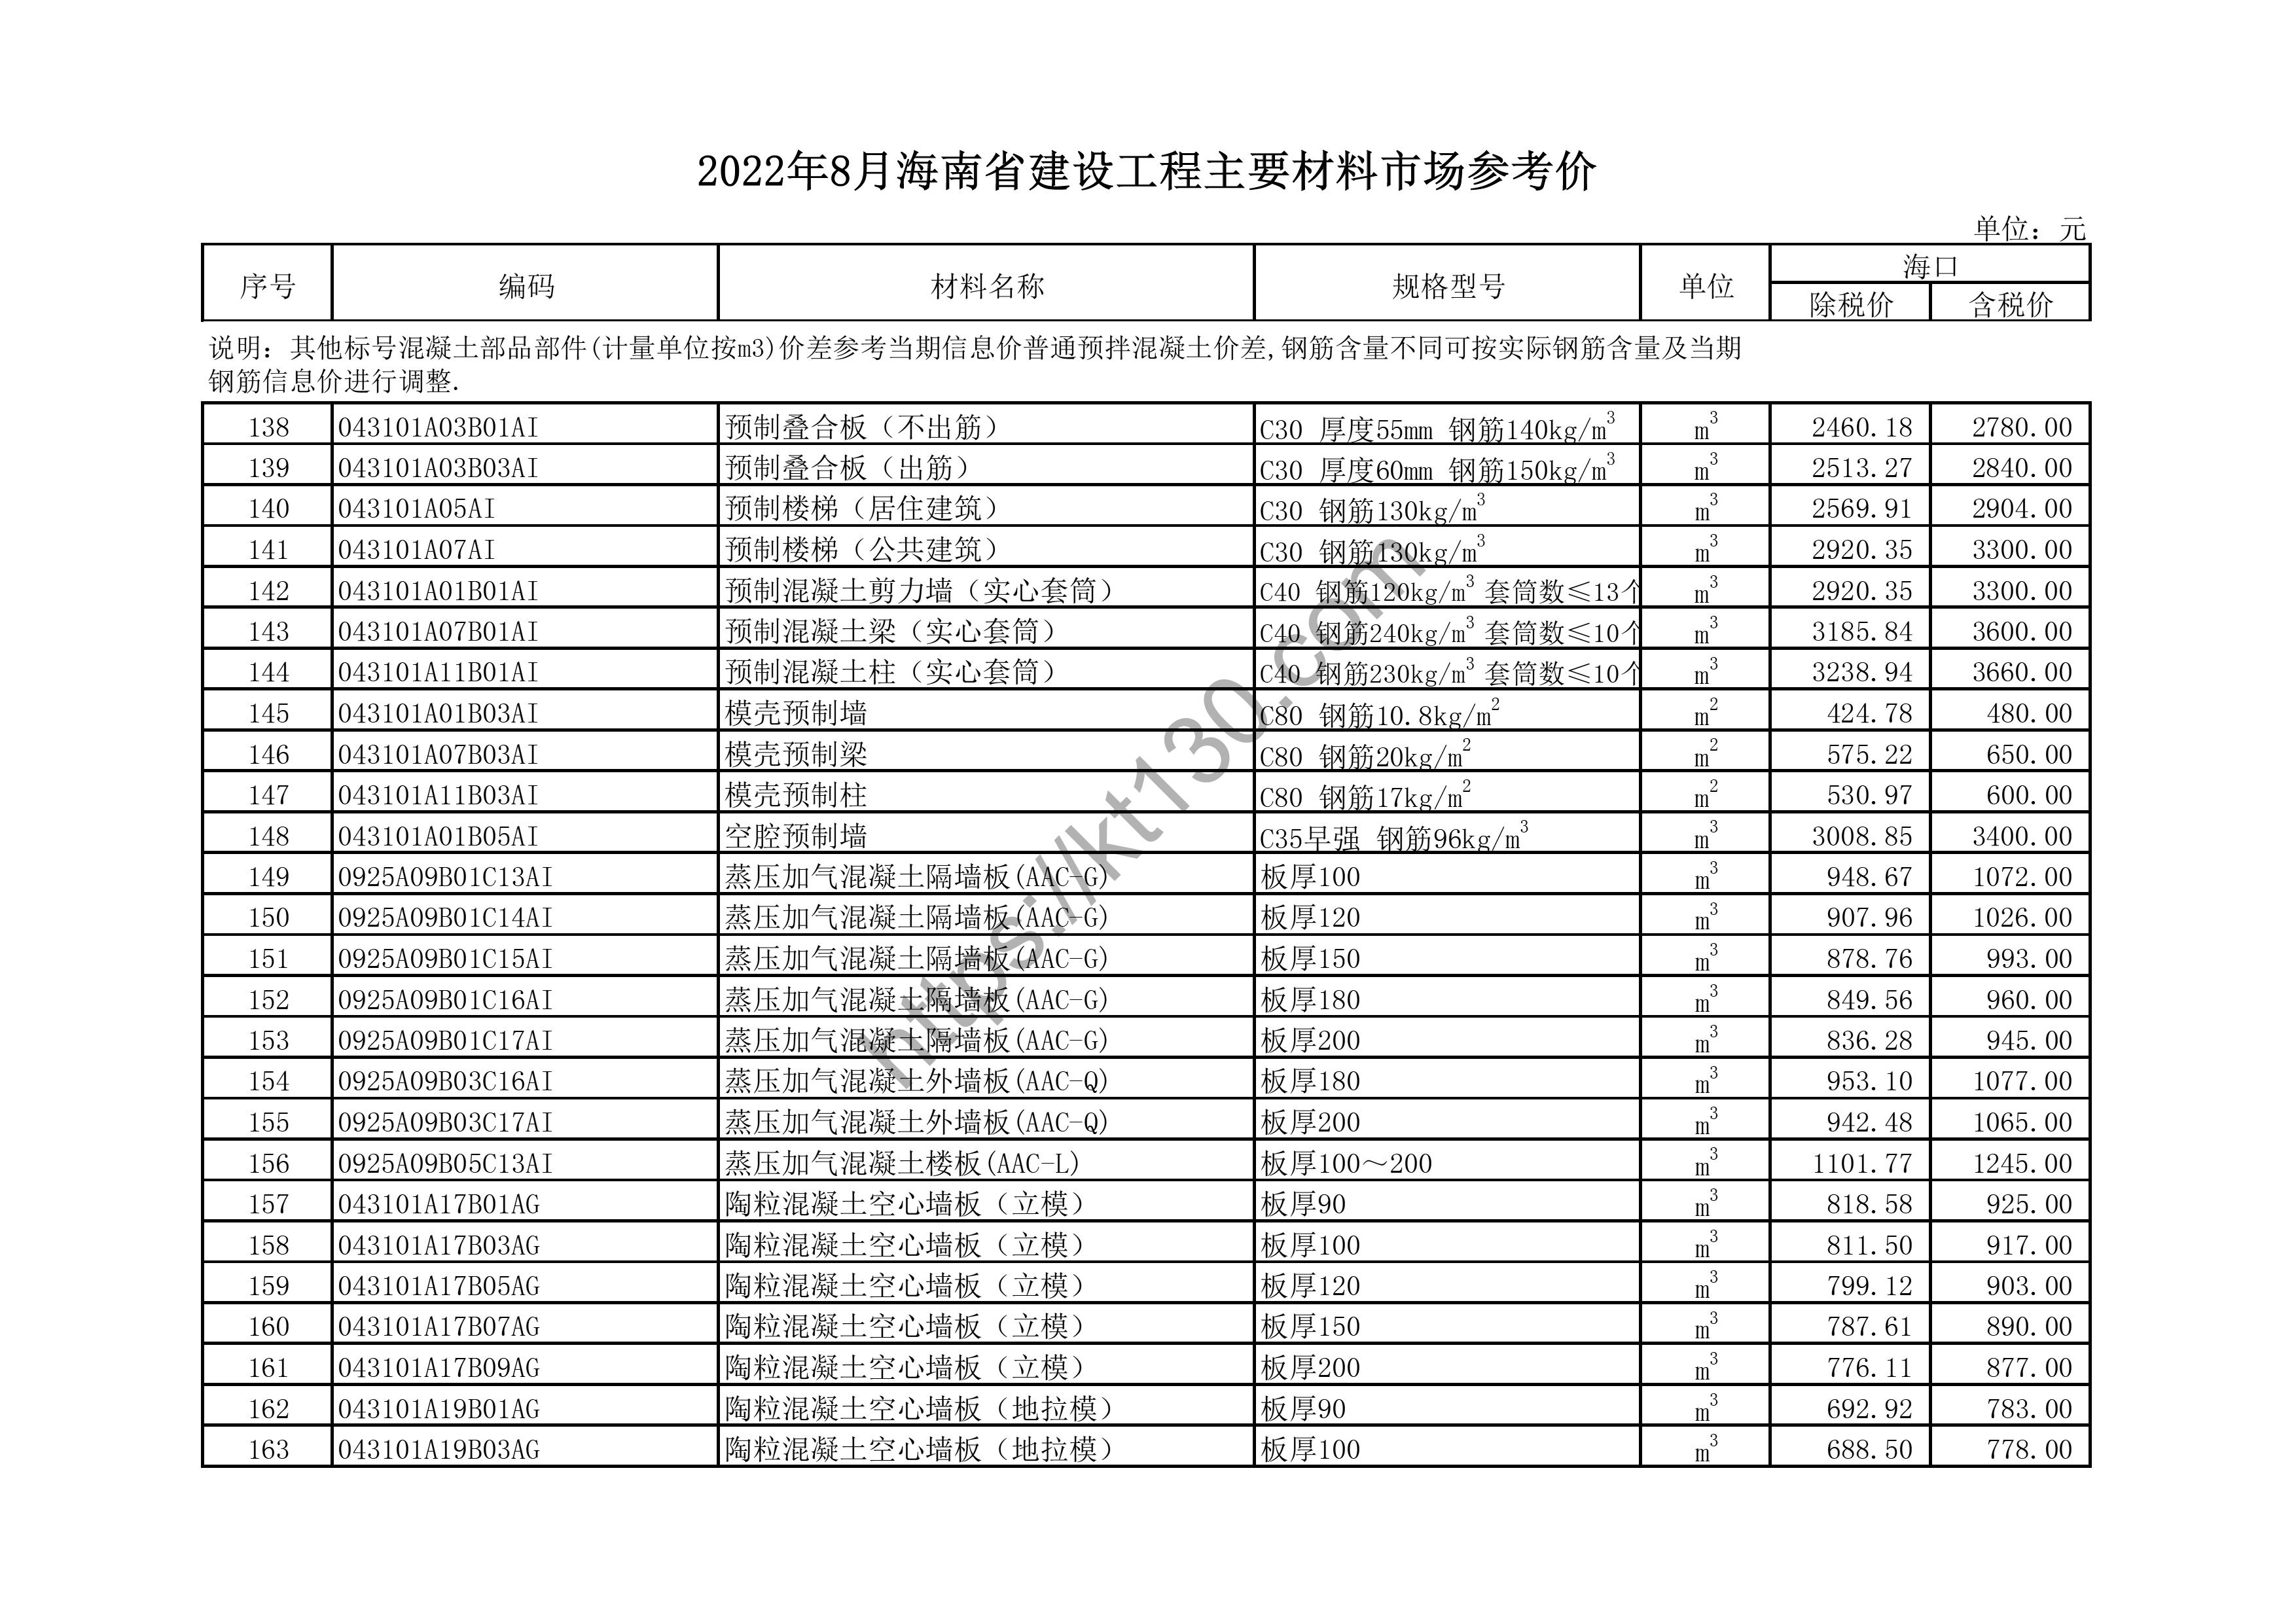 海南省2022年8月建筑材料价_门窗及楼梯制品_44587